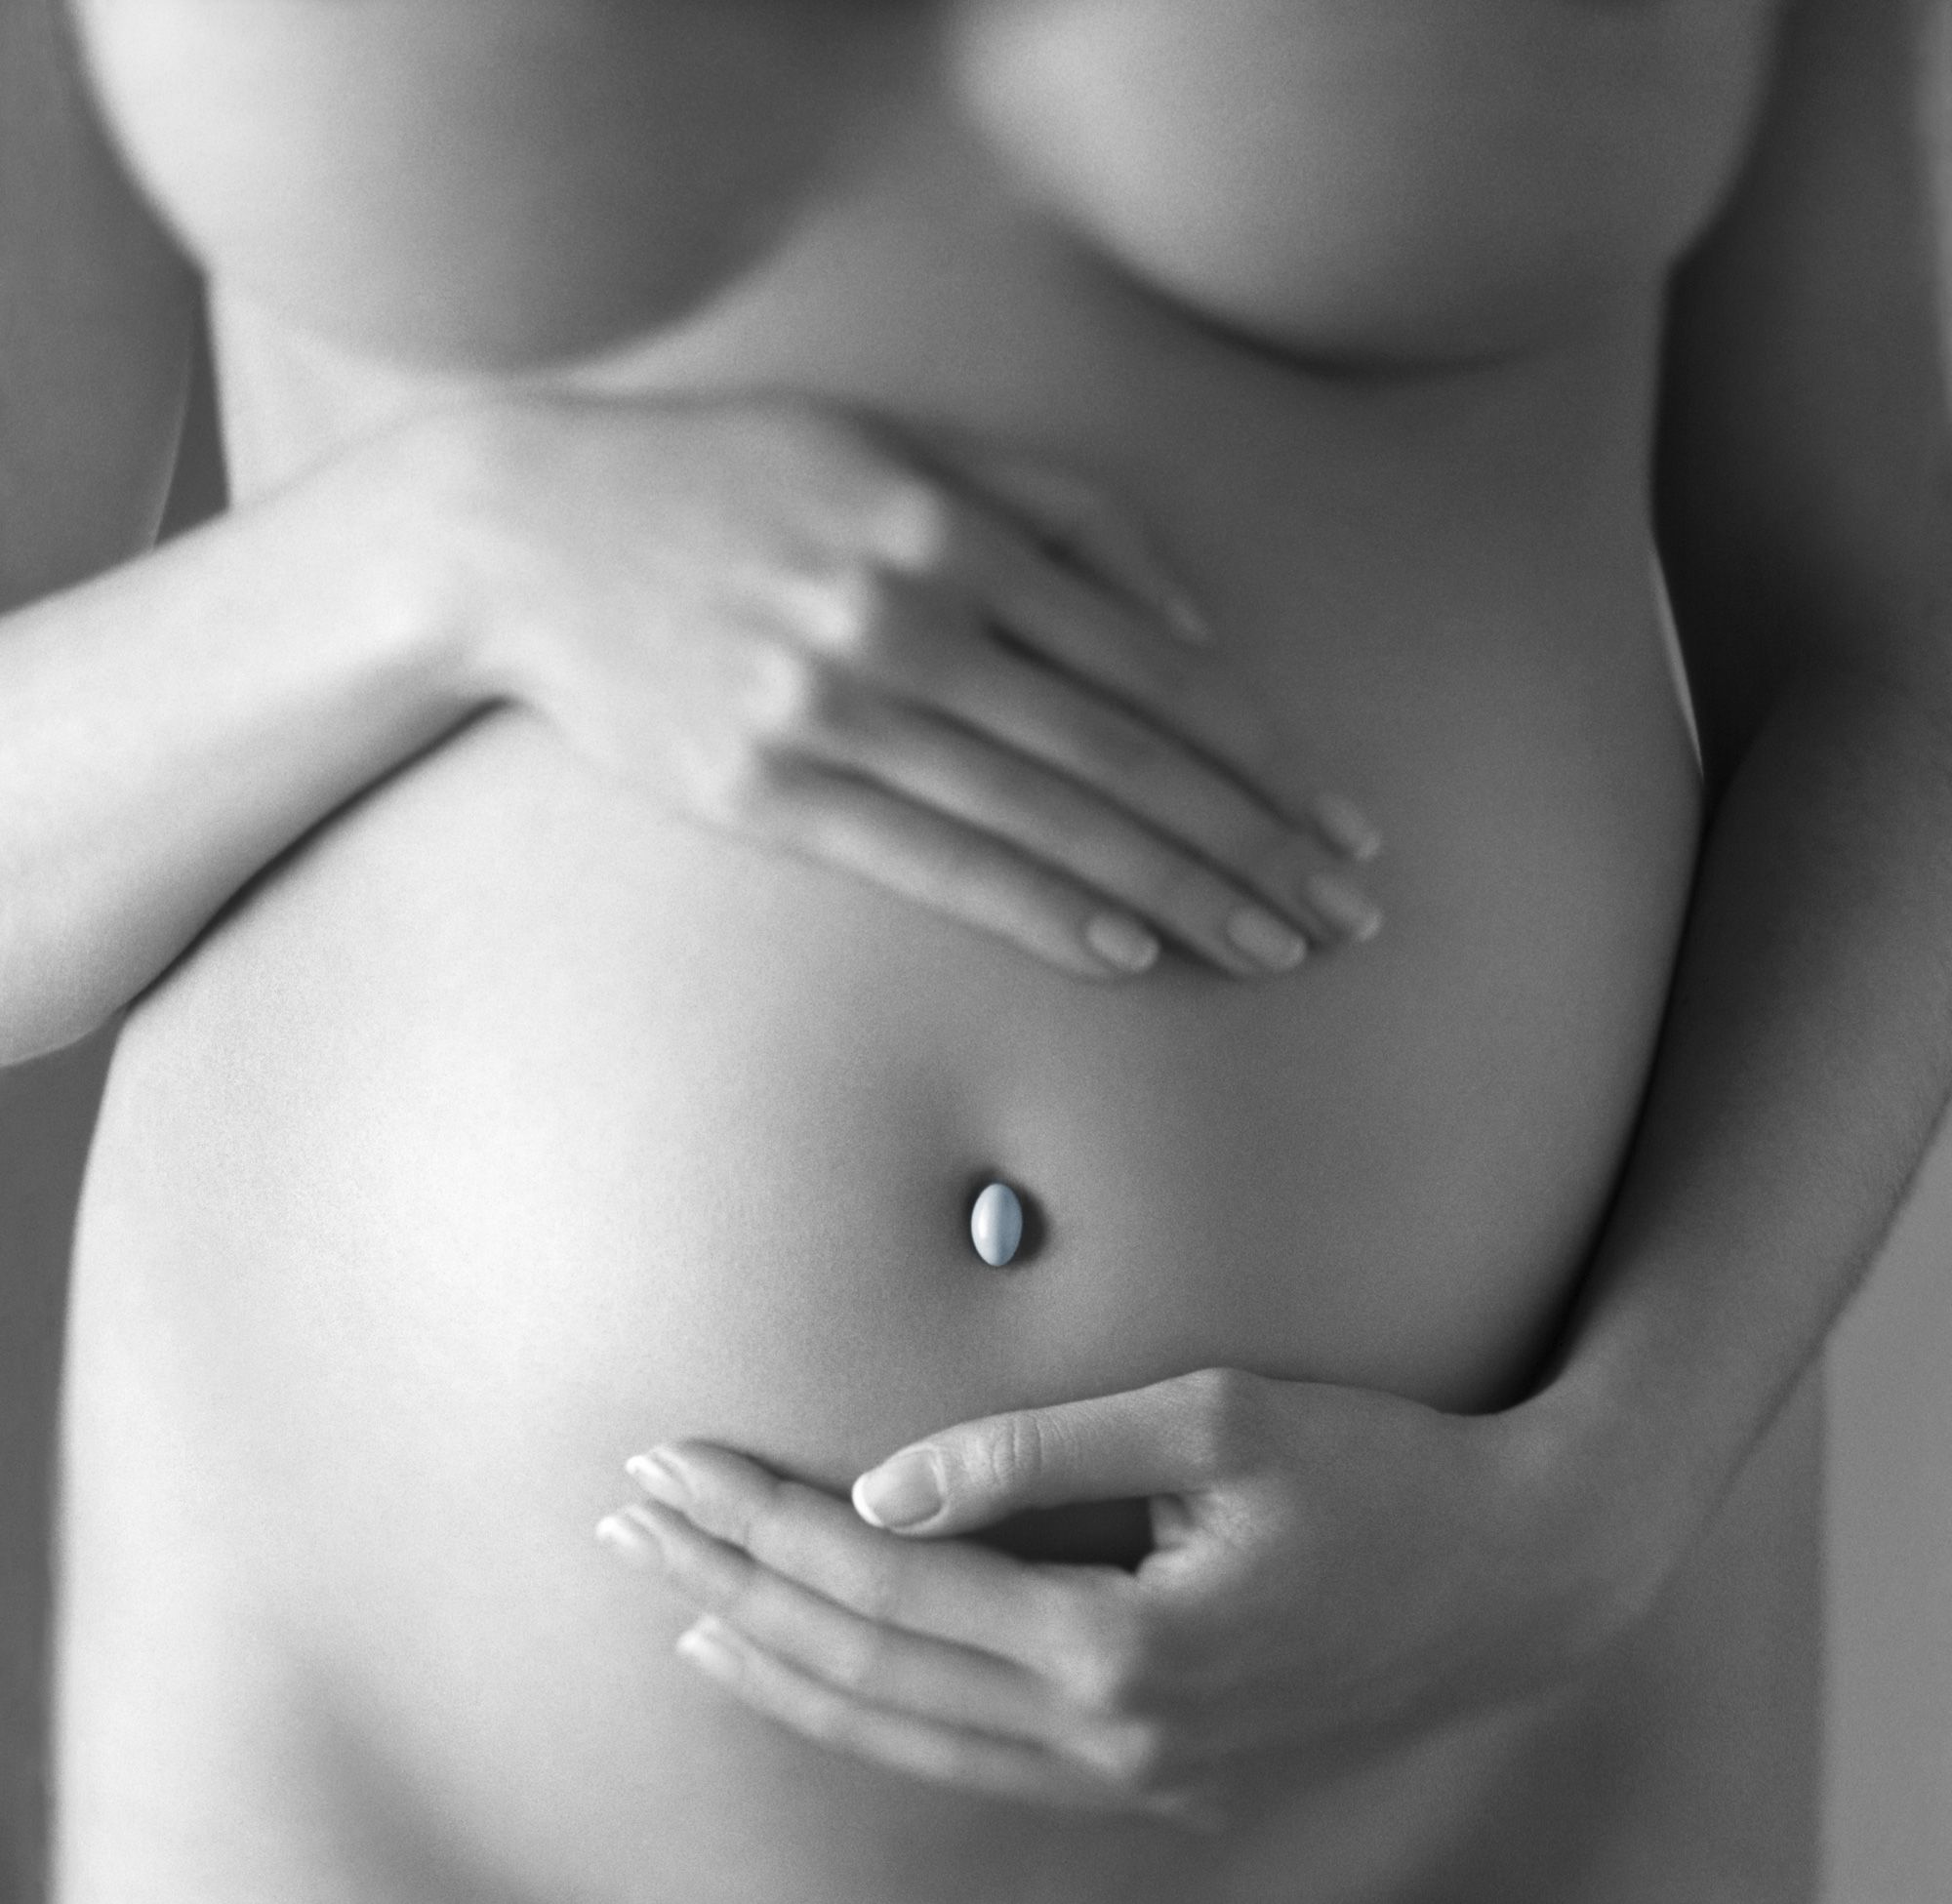 Aide pour séance photo - femme enceinte 6vp5eb51